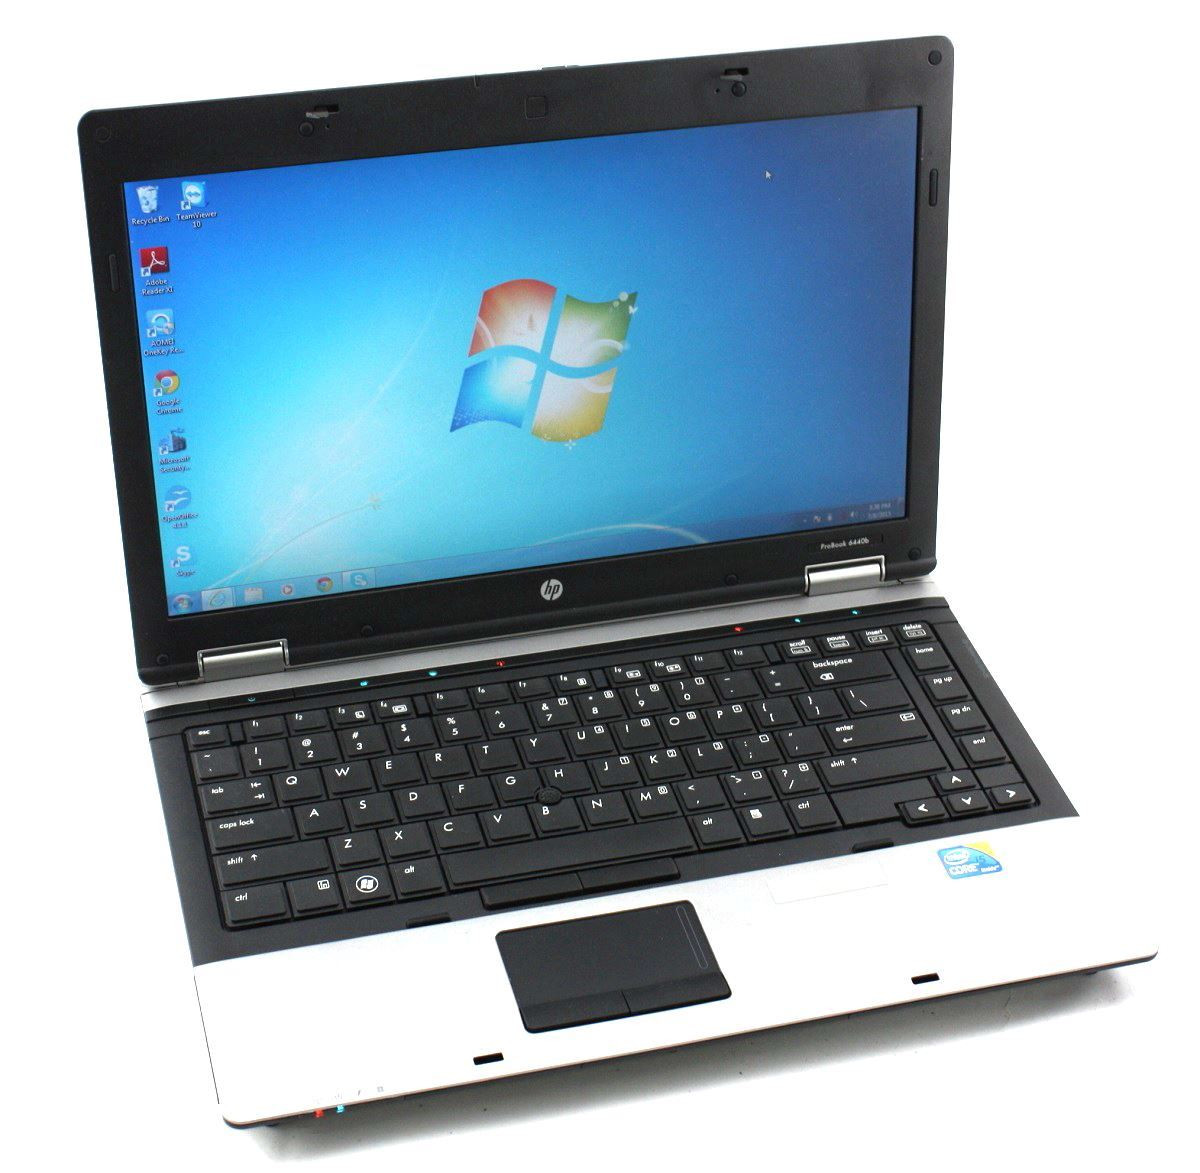 HP ProBook 6440b Laptop Core i5 2.53GHZ 6GB 160GB DVDRW Windows 7 PRO